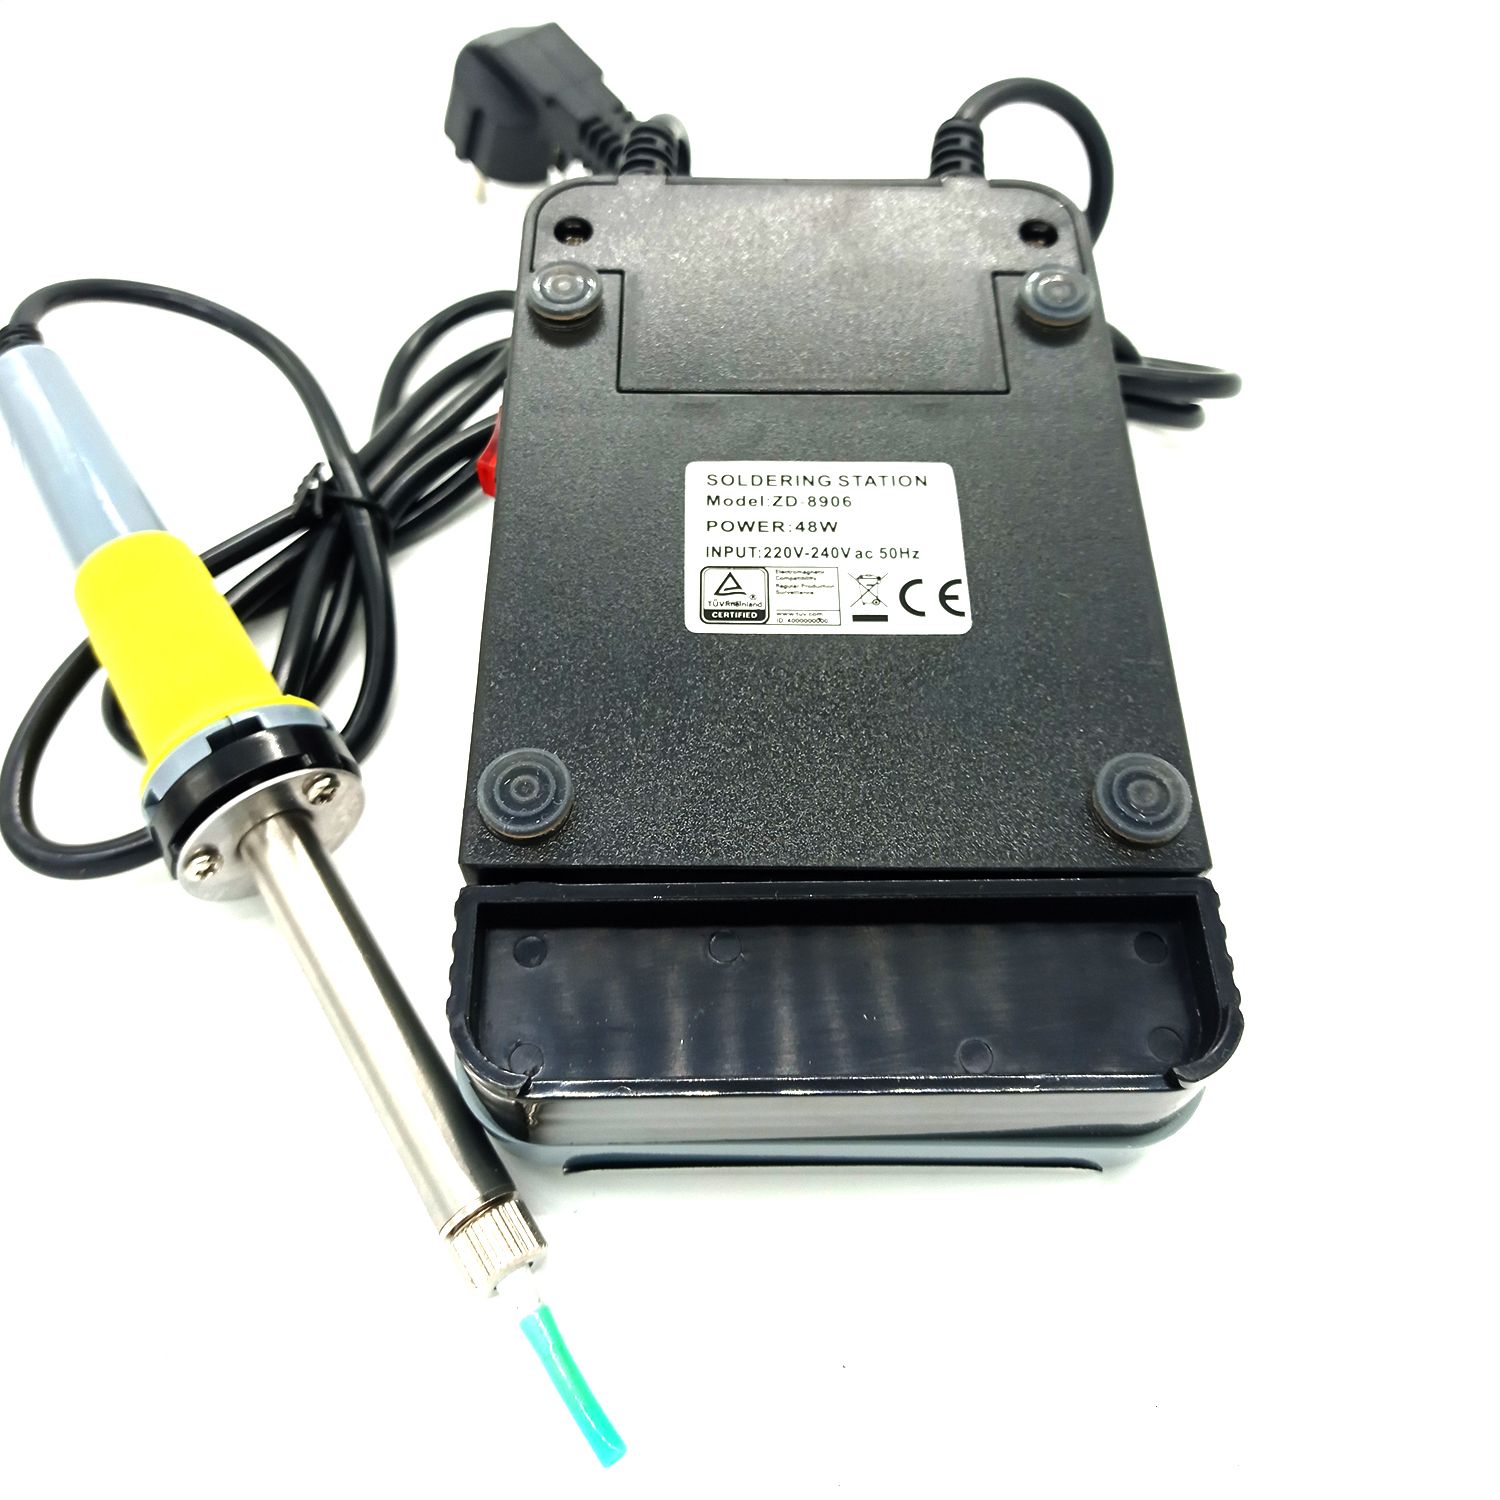 Основное фото Паяльная станция ZD-8906, 48 Вт, с блоком регулировки температуры в интернет - магазине RoboStore Arduino